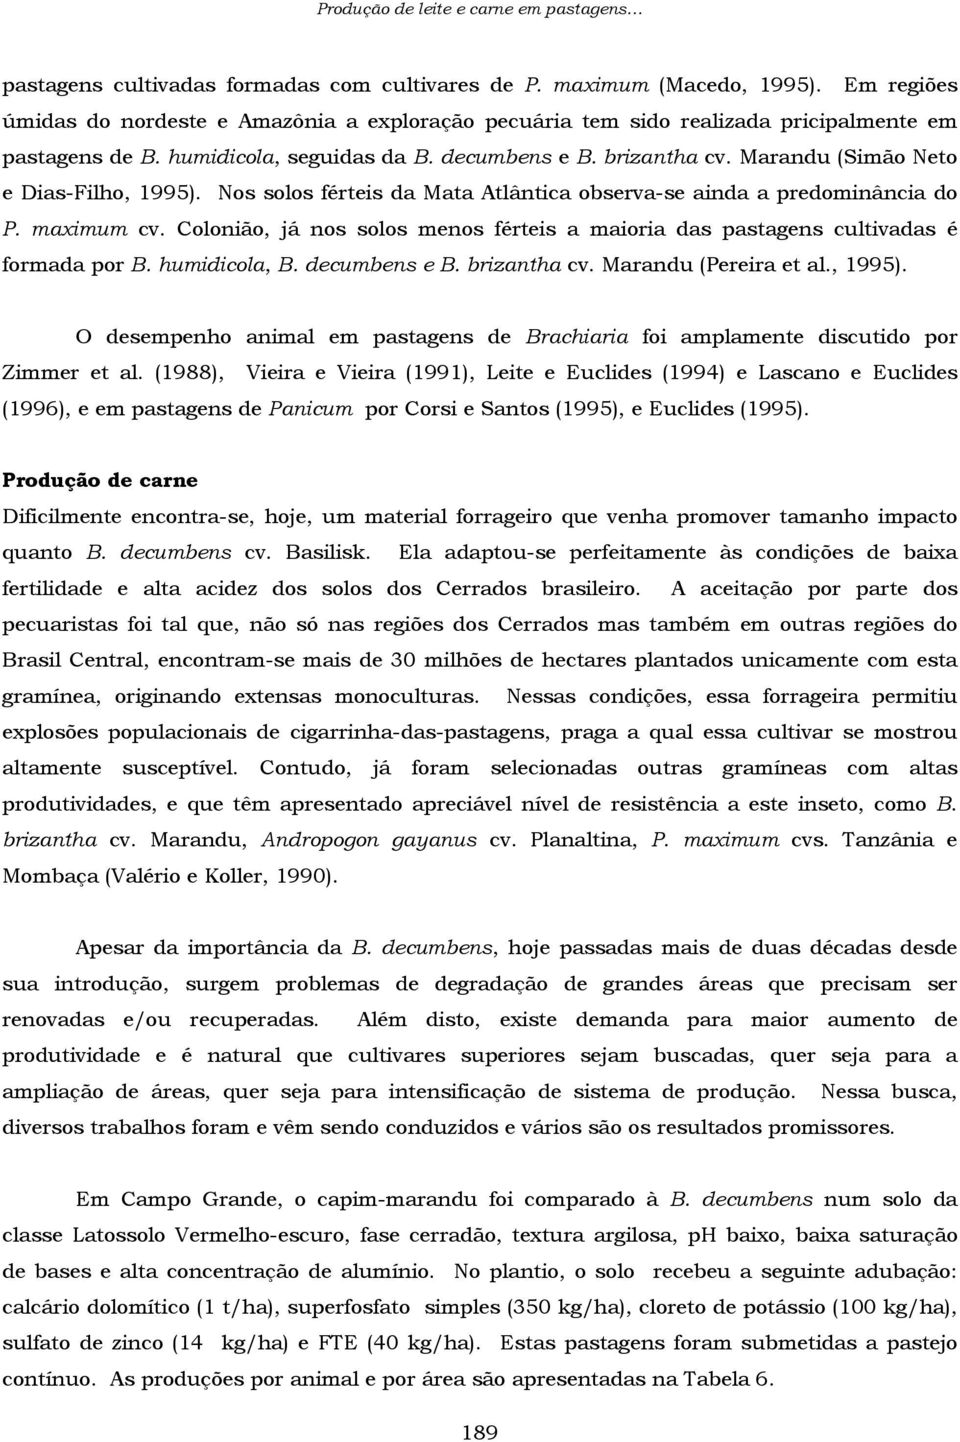 Marandu (Simão Neto e Dias-Filho, 1995). Nos solos férteis da Mata Atlântica observa-se ainda a predominância do P. maximum cv.